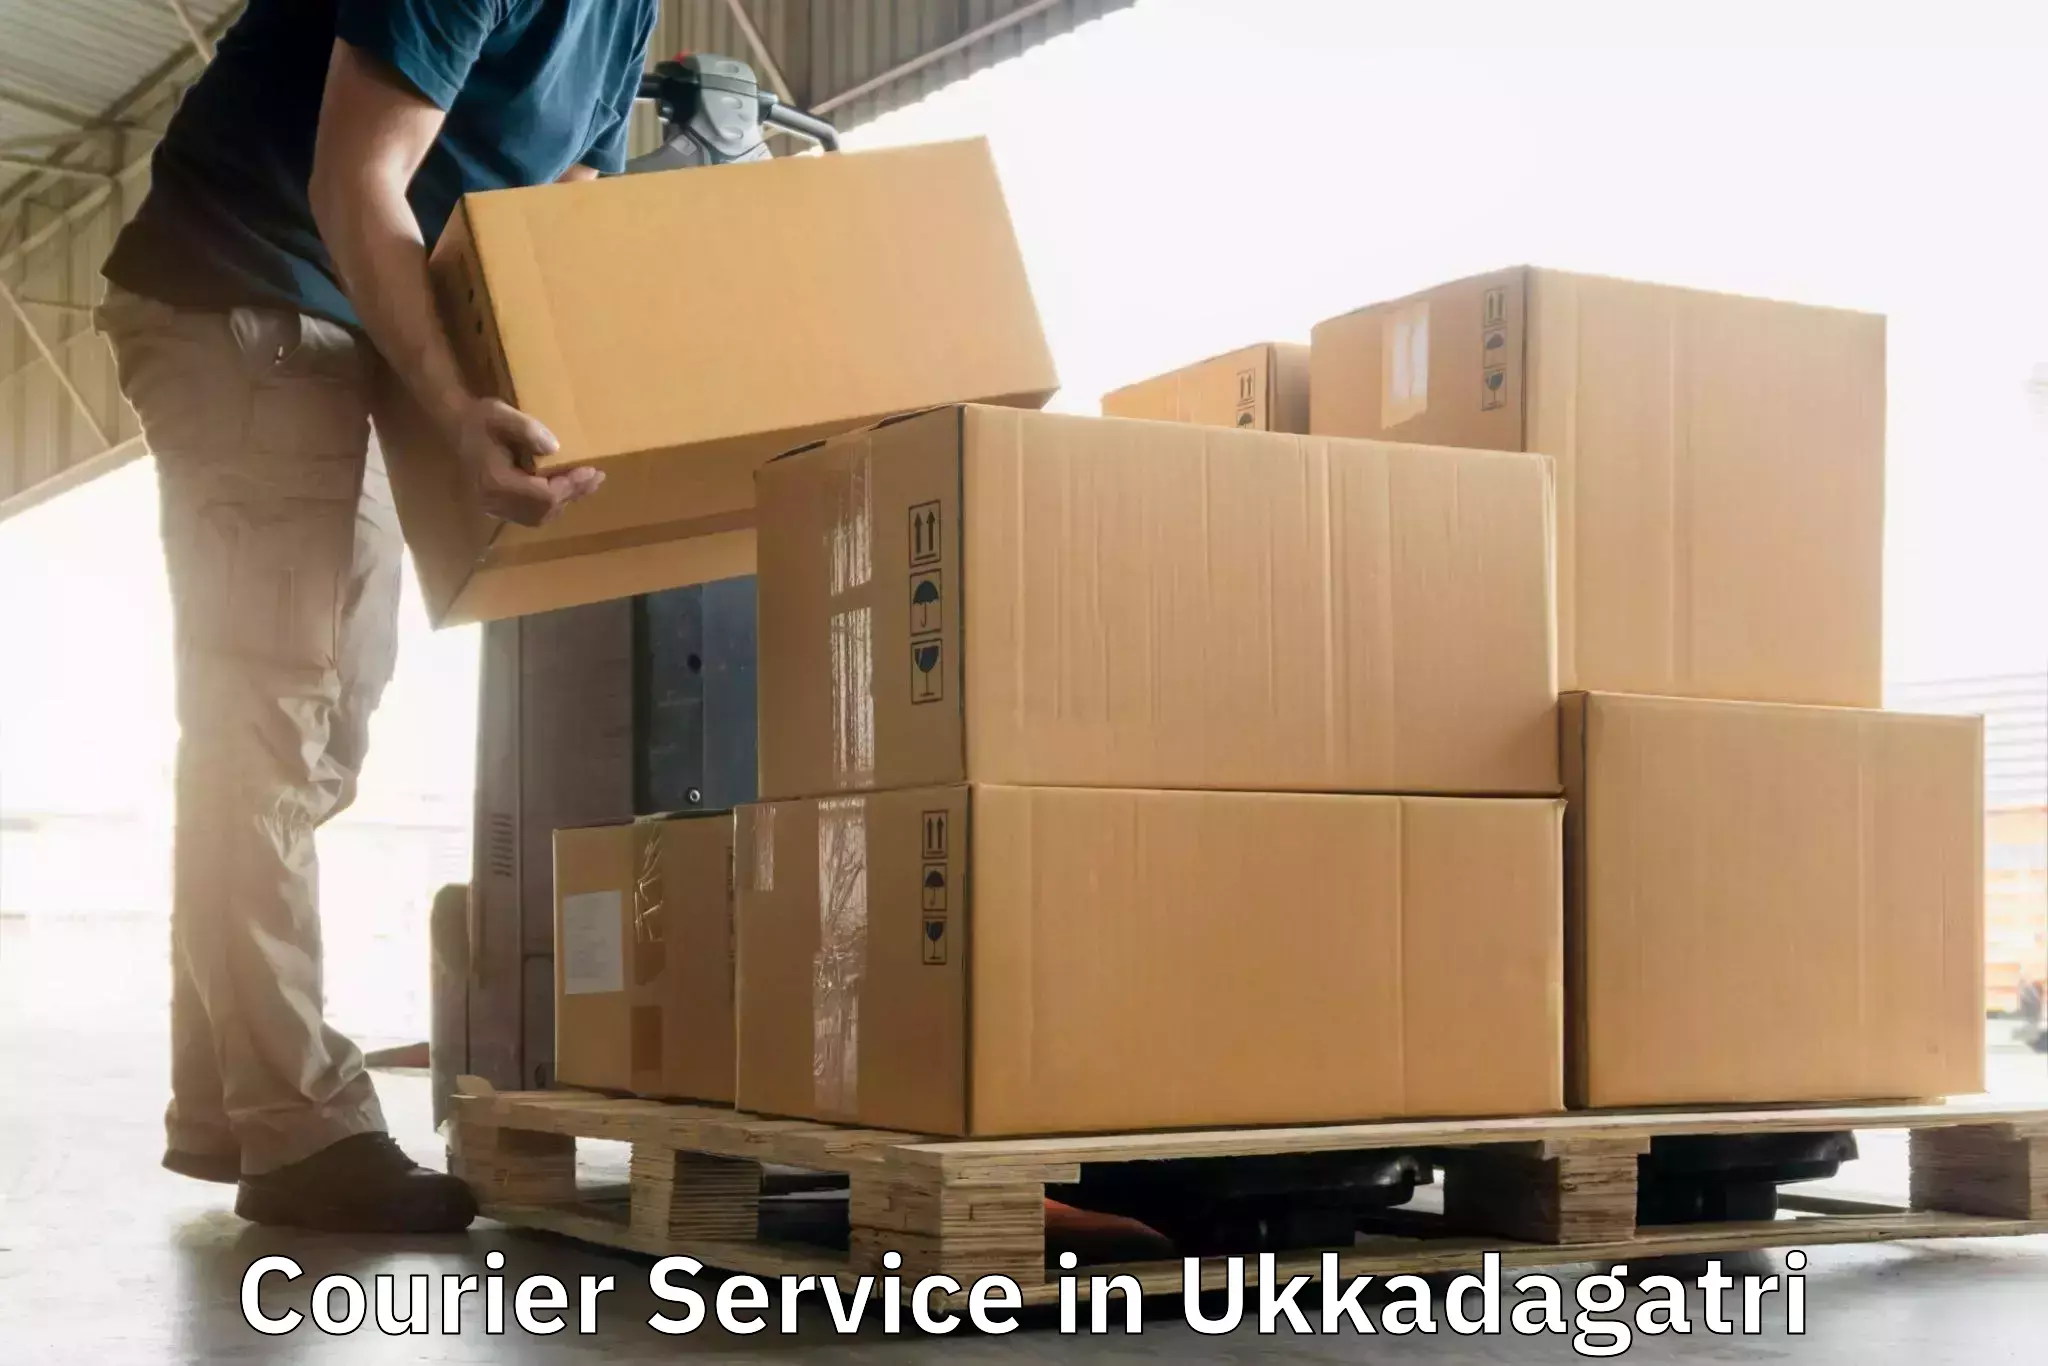 Modern courier technology in Ukkadagatri